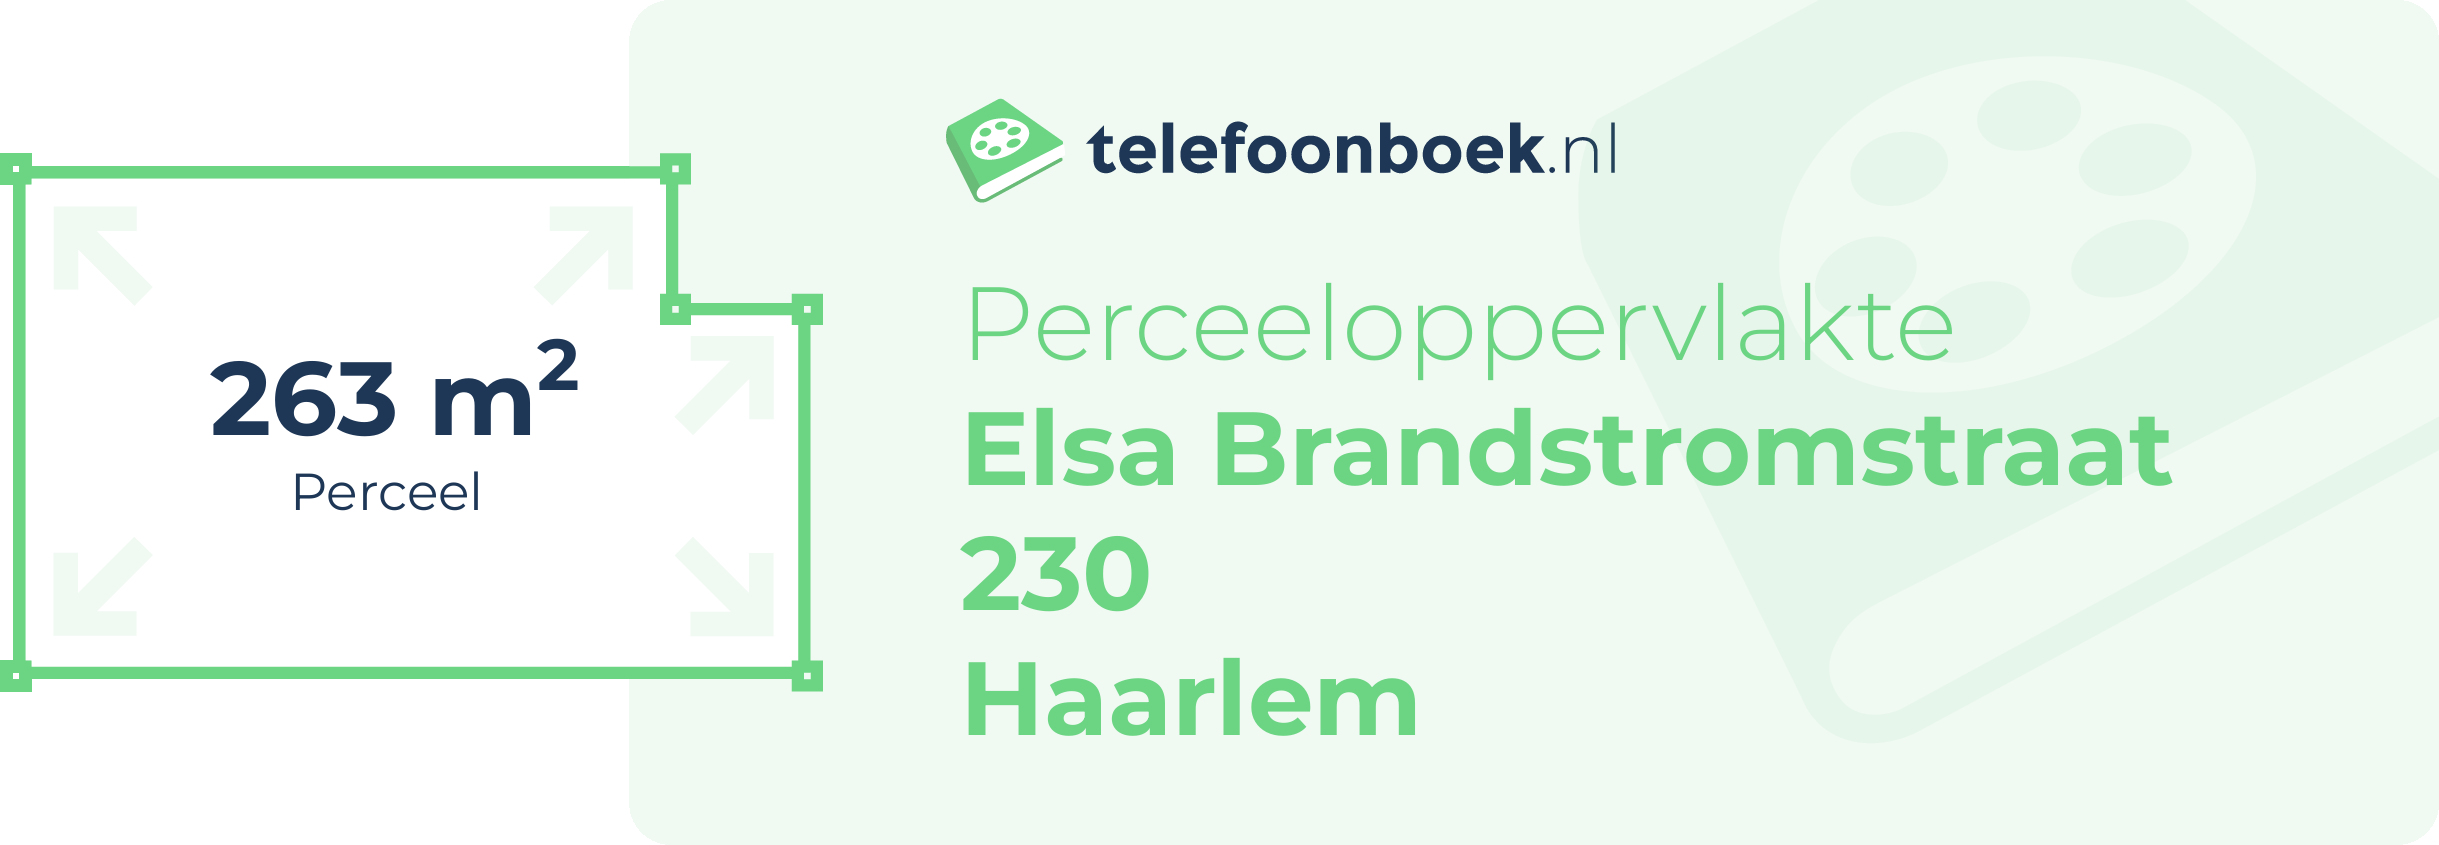 Perceeloppervlakte Elsa Brandstromstraat 230 Haarlem